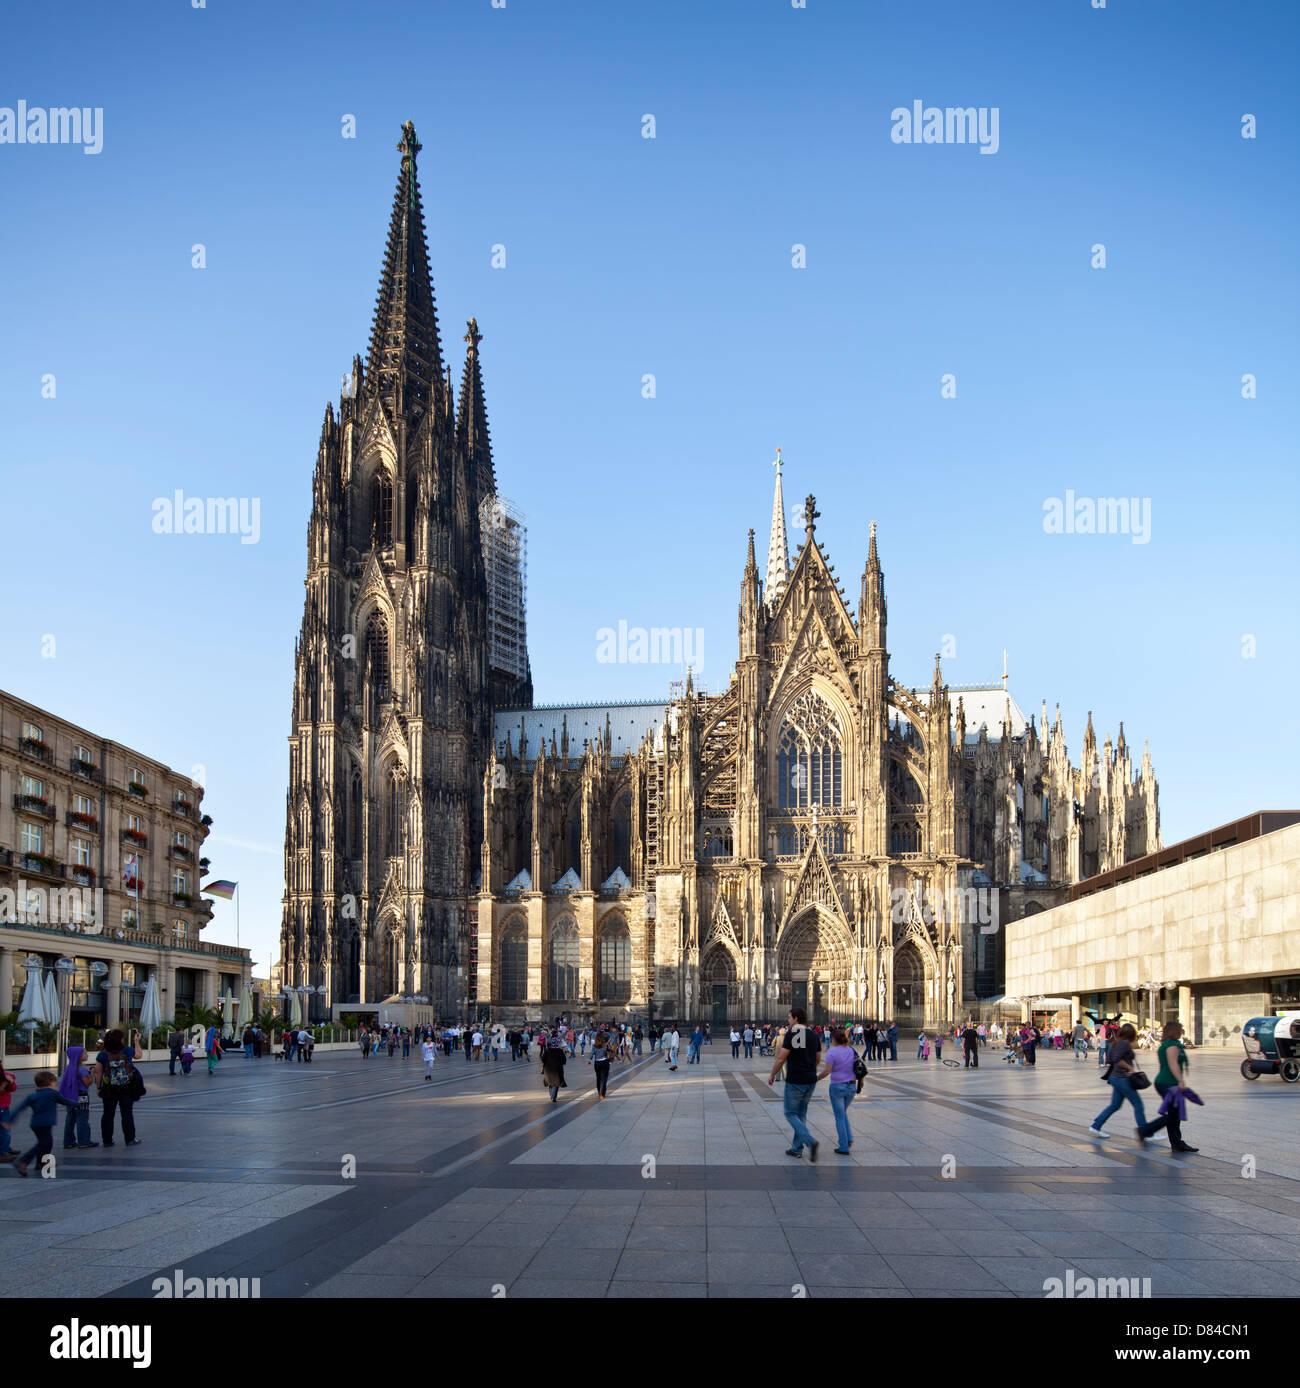 Der berühmte Kölner Dom in Deutschland tagsüber mit Touristen im Vordergrund. Perspektive korrigiert Panorama. Stockfoto